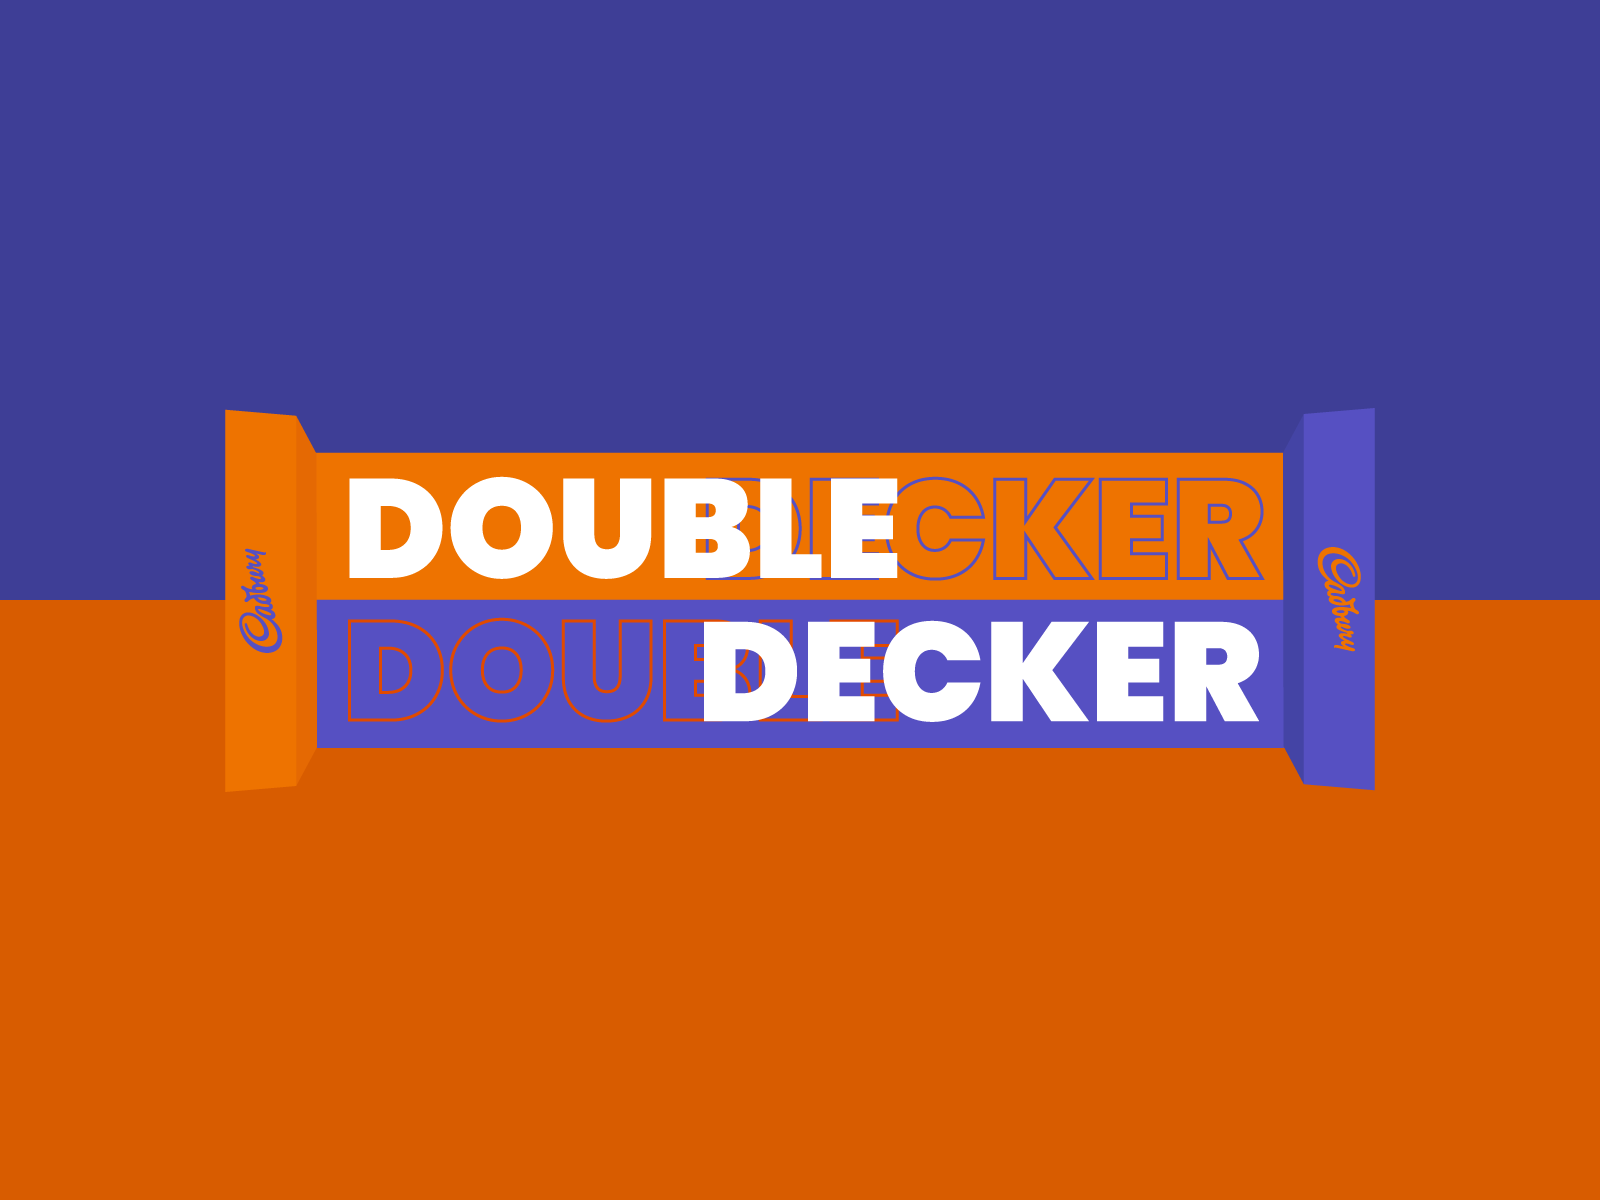 Double decker media